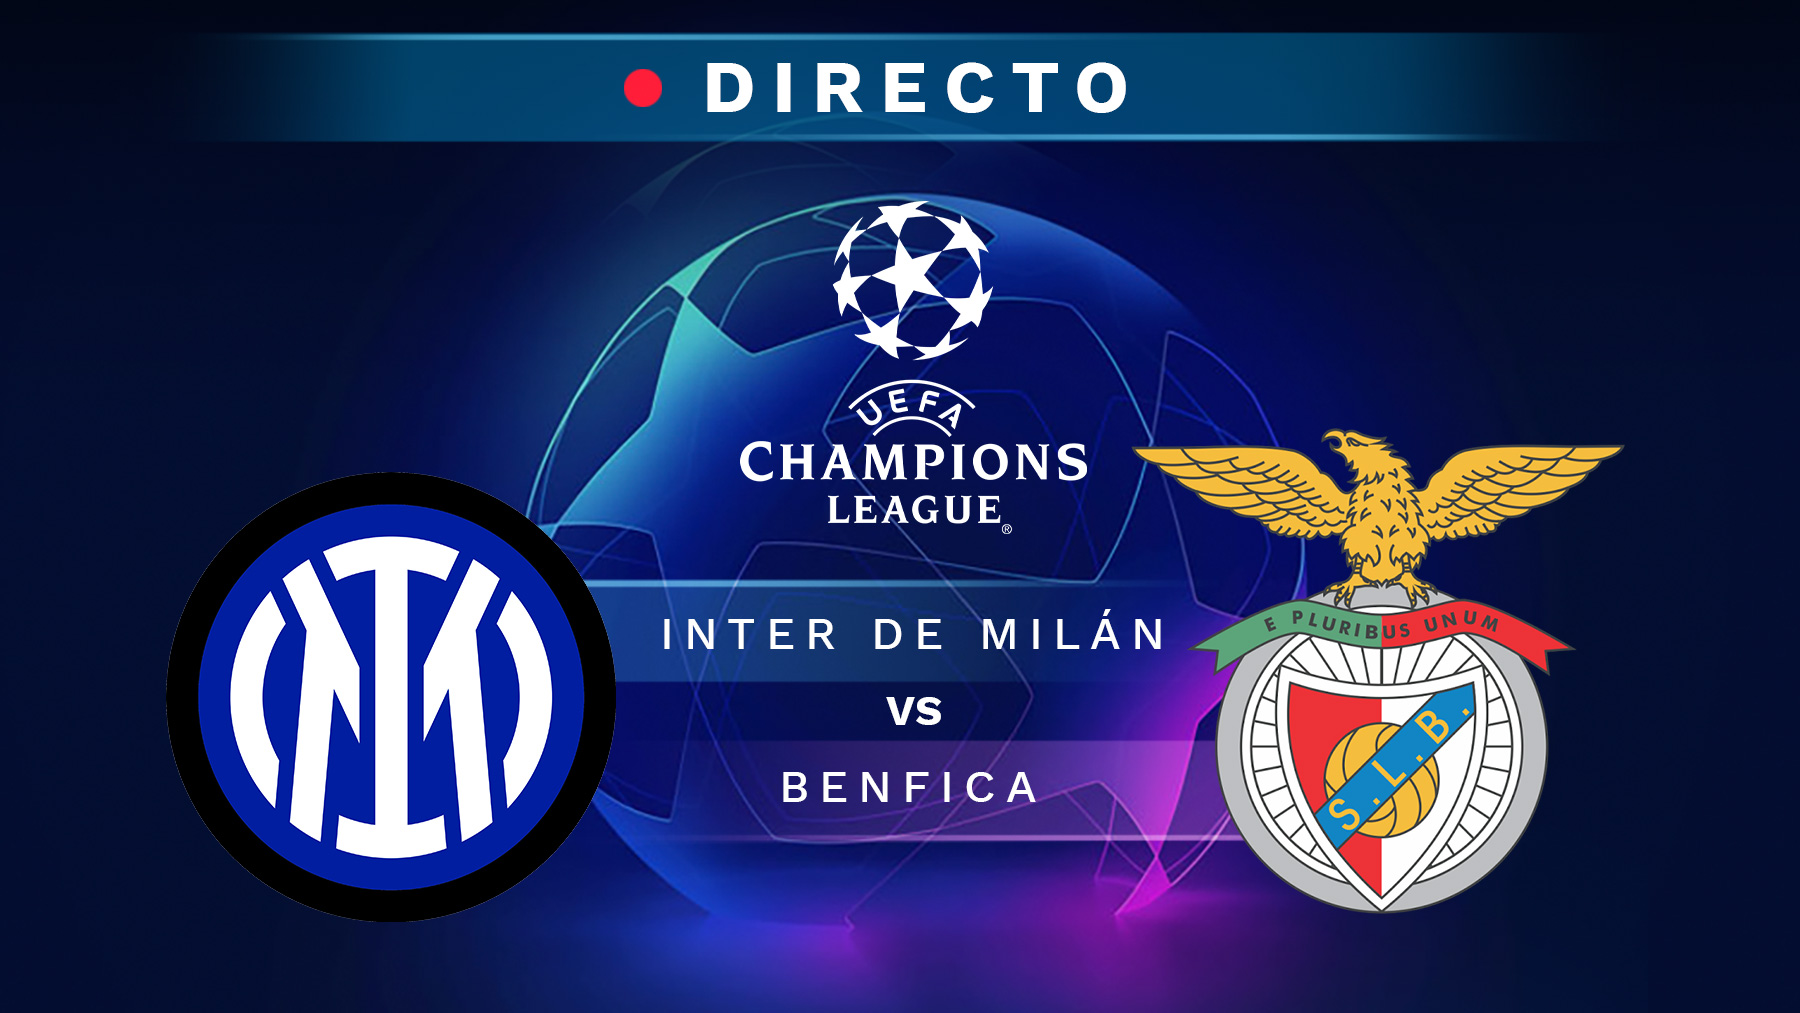 Inter de Milán – Benfica, en directo: resultado, goles y minuto a minuto del partido de Champions League hoy.